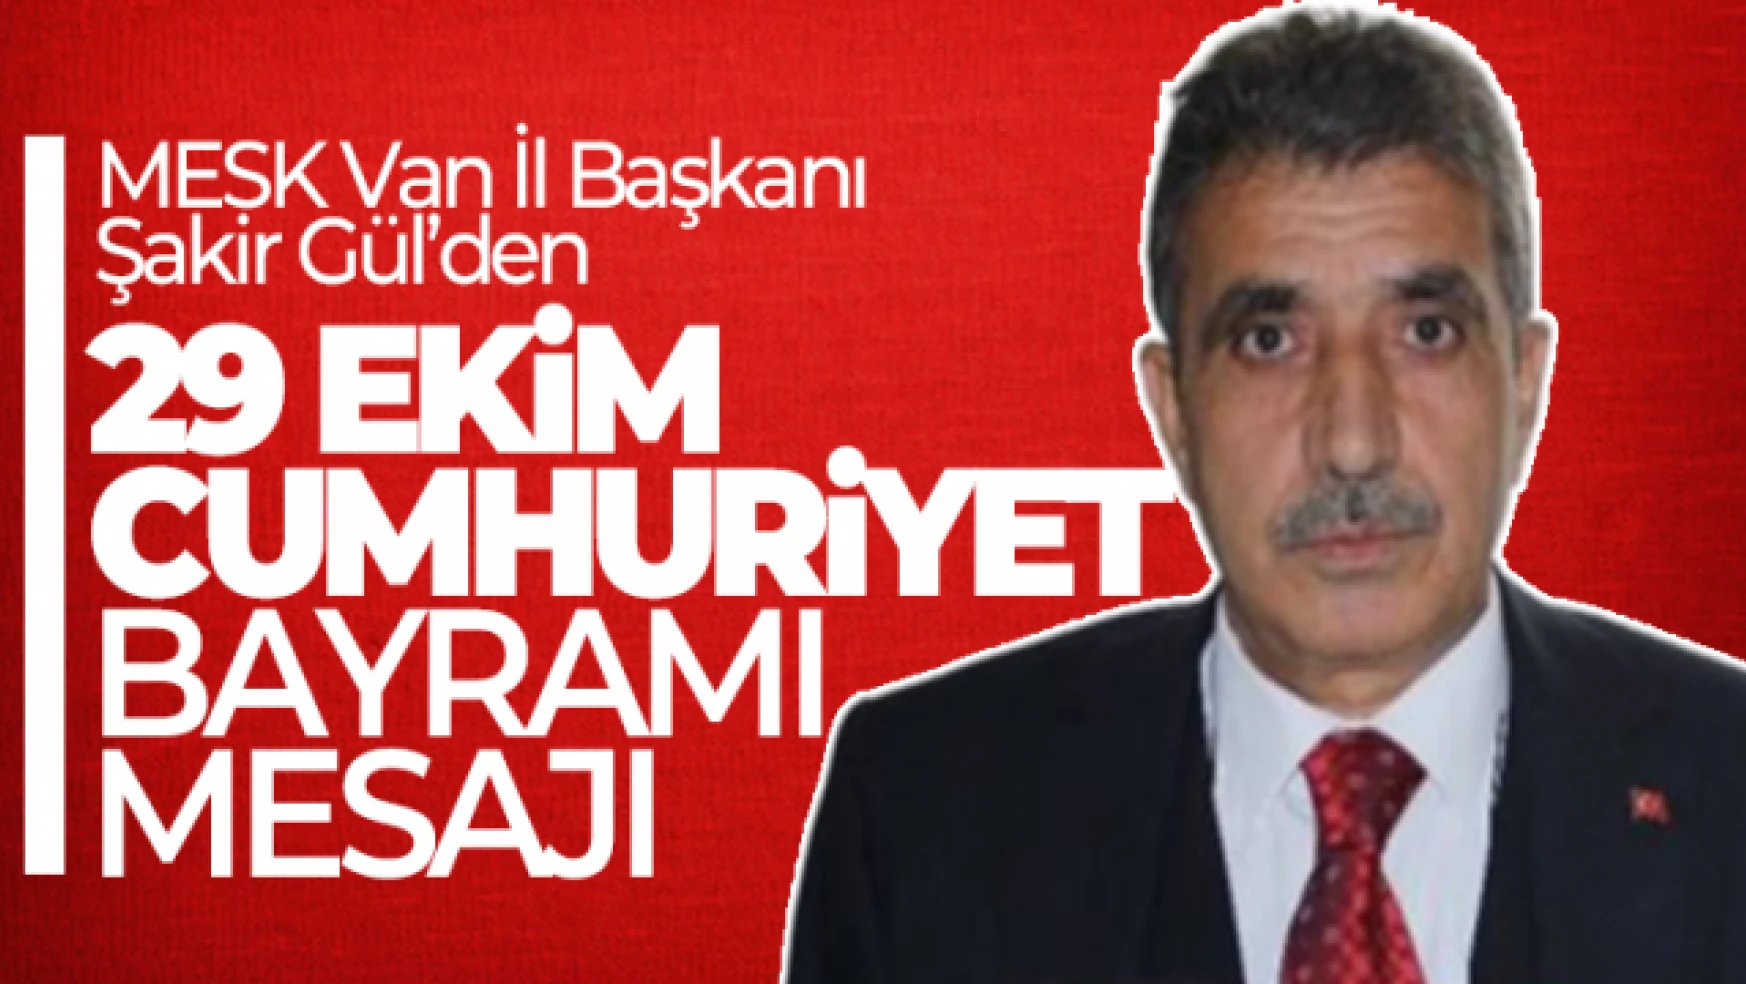 MESK Van İl Başkanı Gül'den 29 Ekim Cumhuriyet Bayramı mesajı